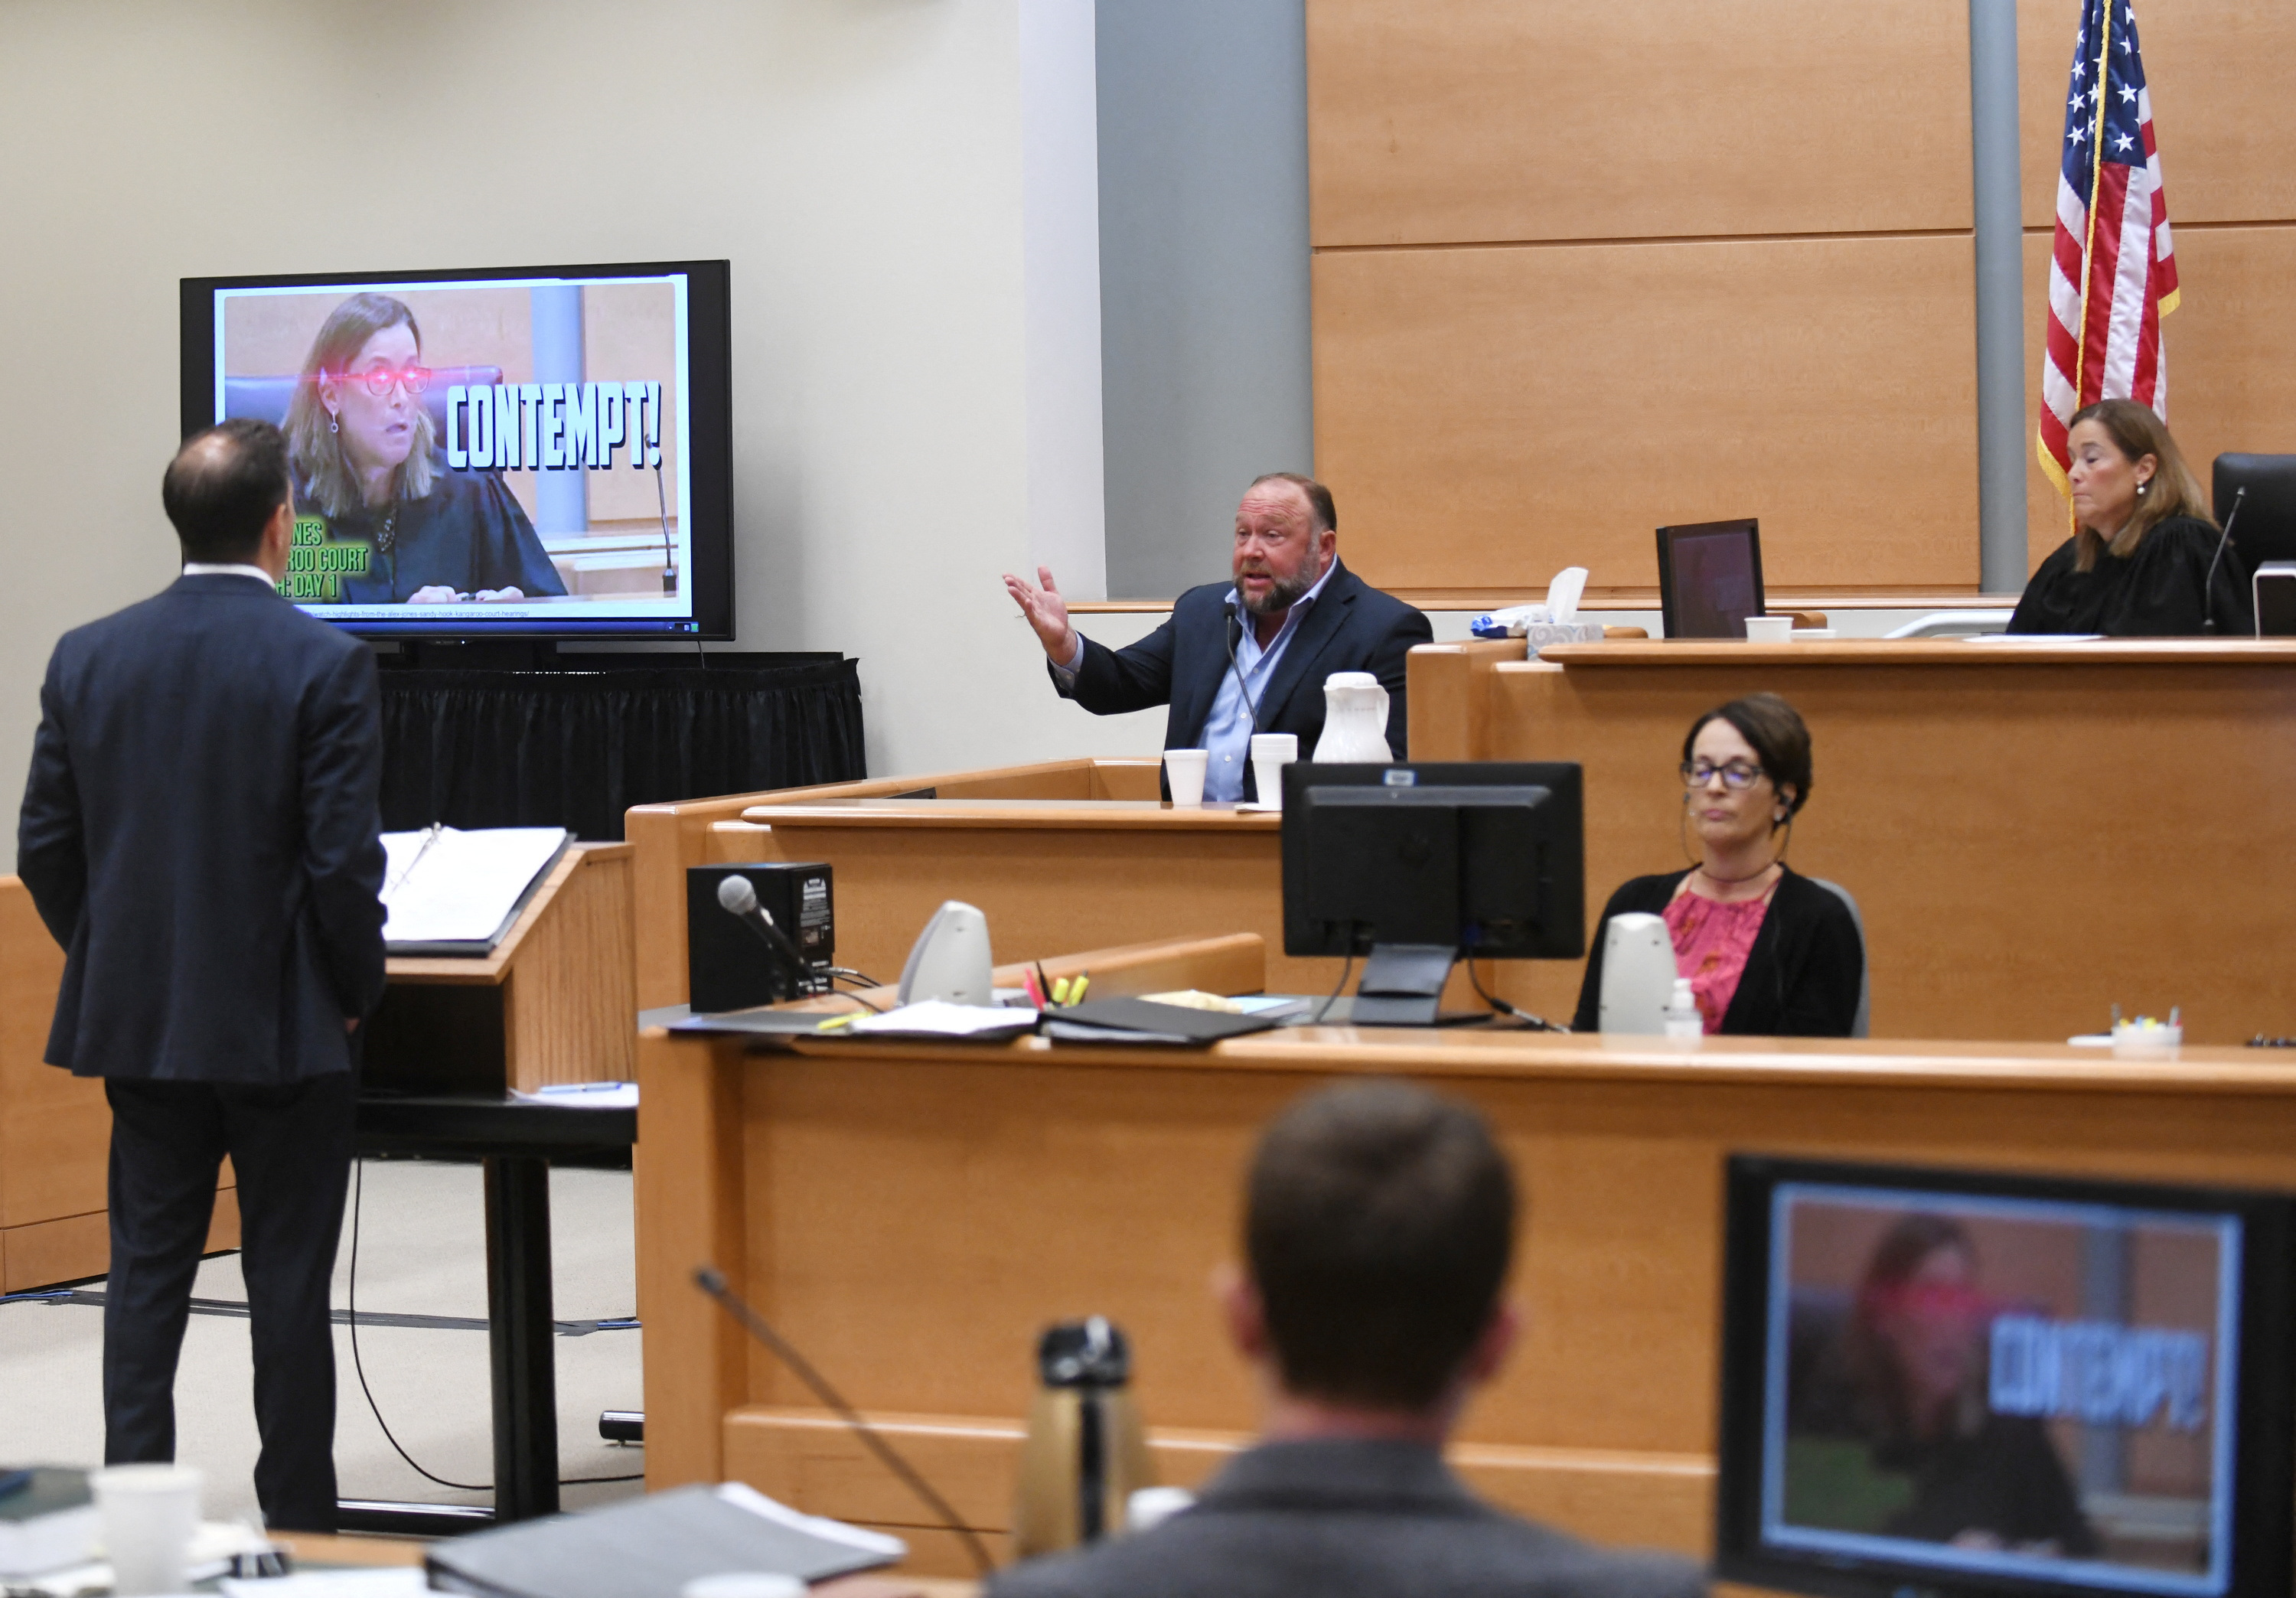 Infowars founder Alex Jones takes the witness stand to testify